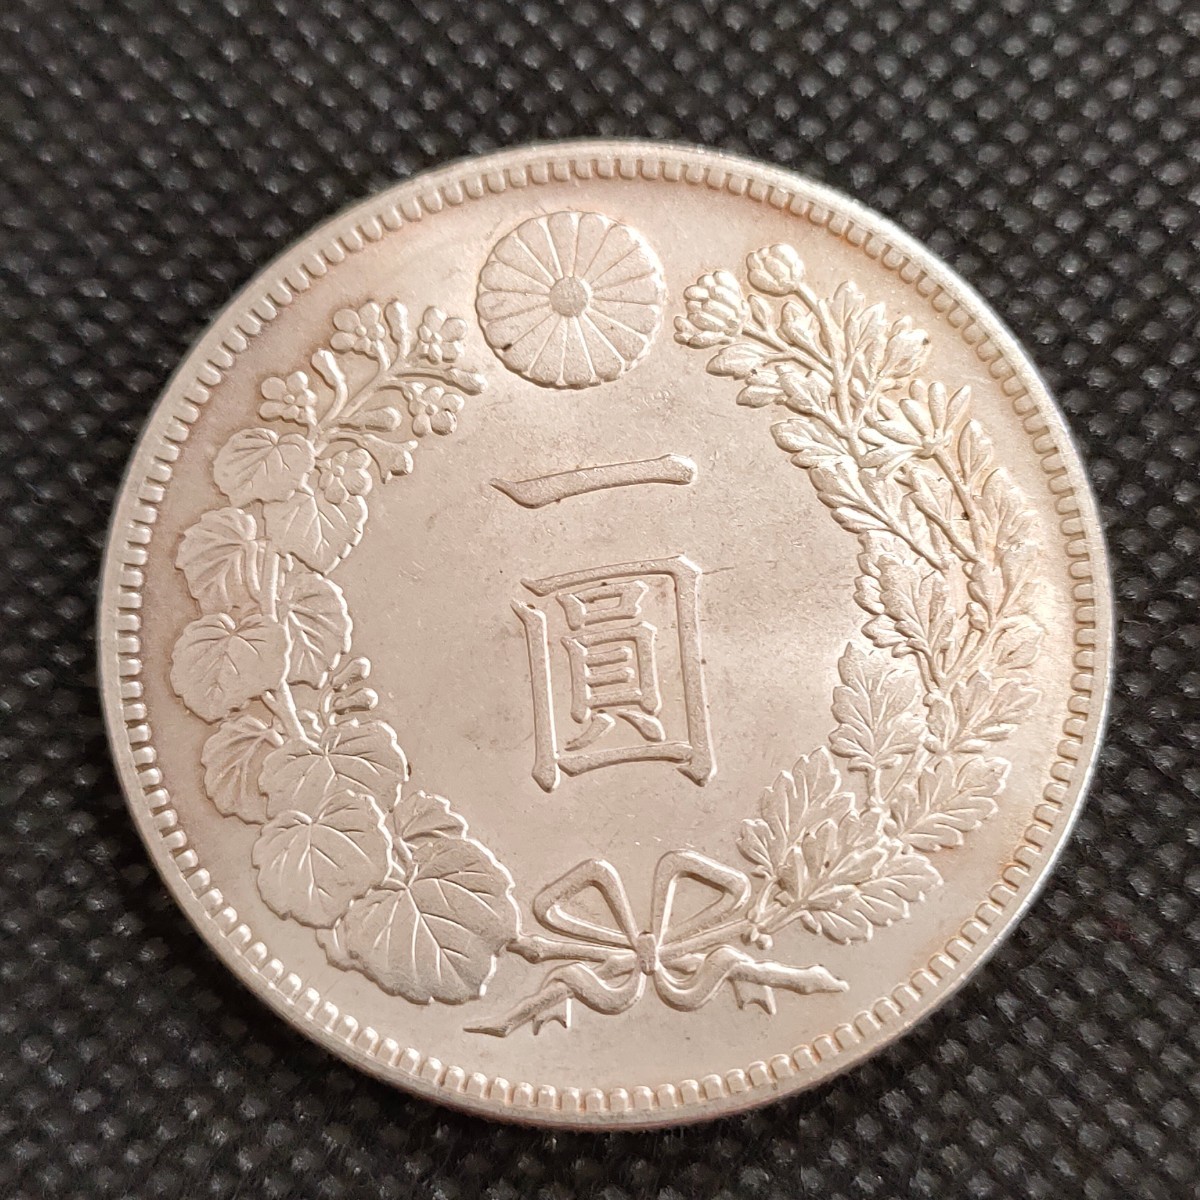 6030 日本古銭 一圓貨幣 明治19年 メダル コインの画像1